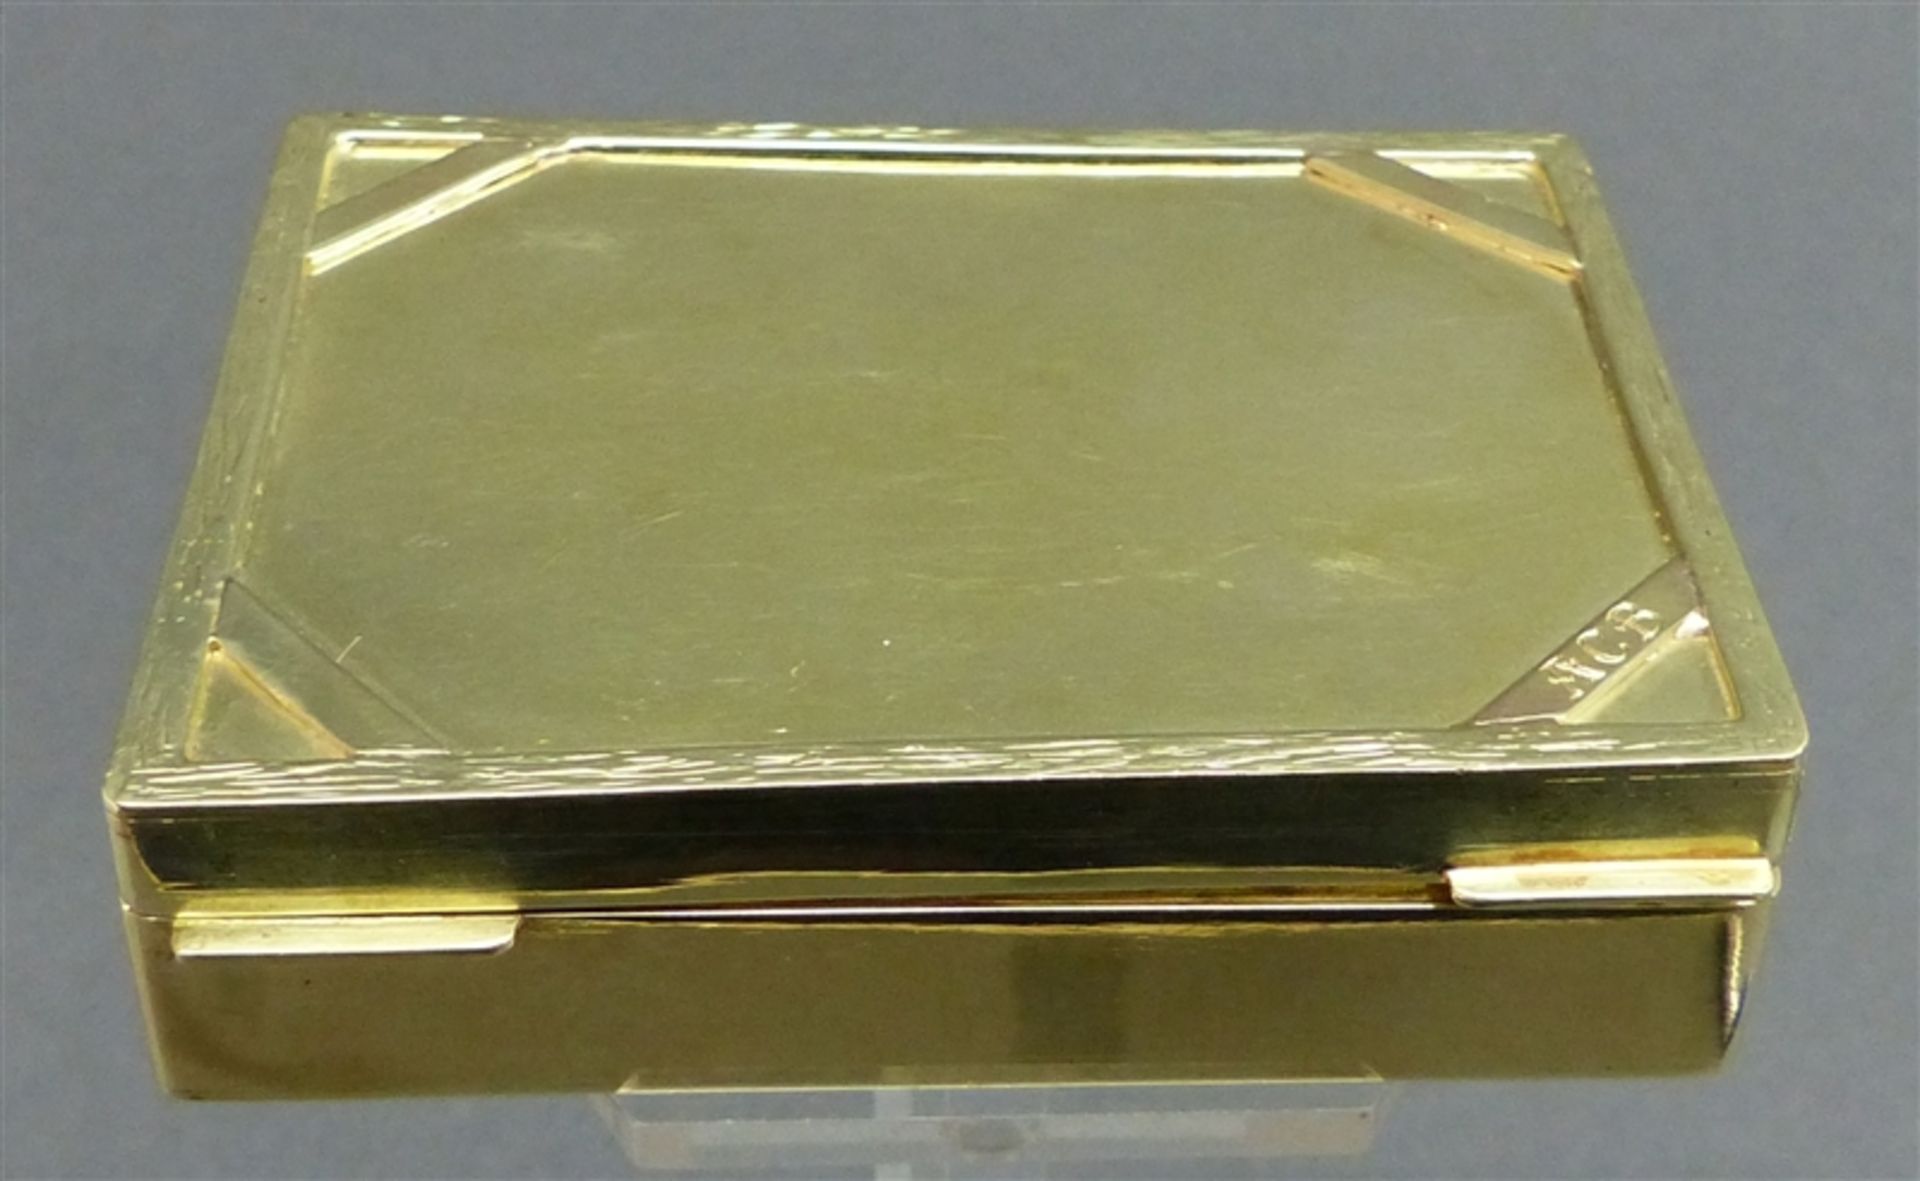 Golddose 14 kt. Gelbgold, Reliefrand, punziert, Meistermarke Lindinger ?, Regensburg, Handarbeit mit